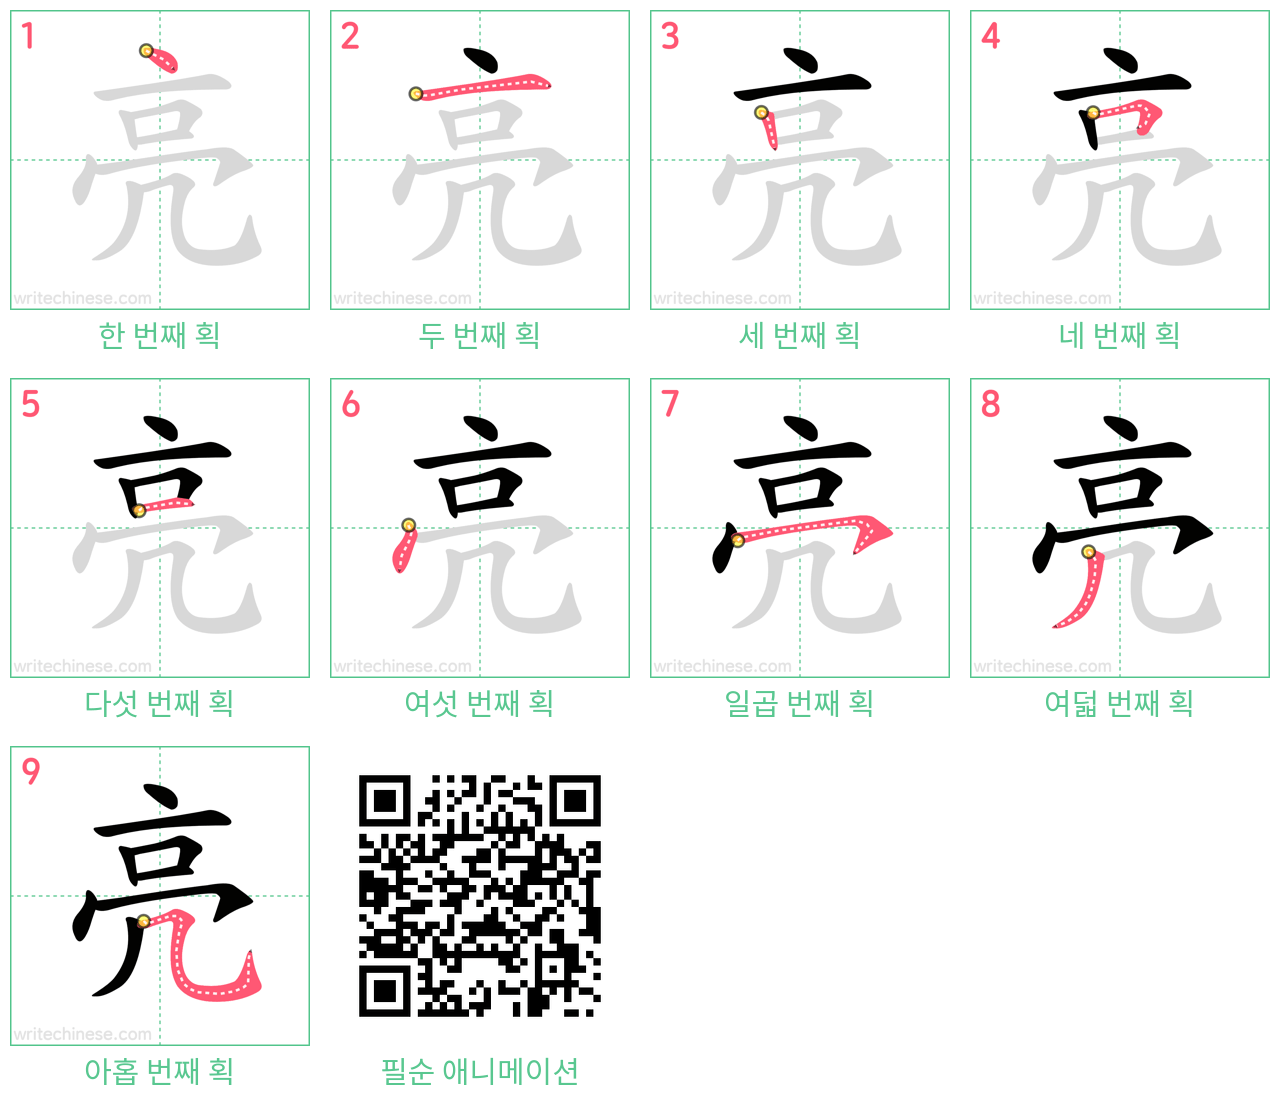 亮 step-by-step stroke order diagrams